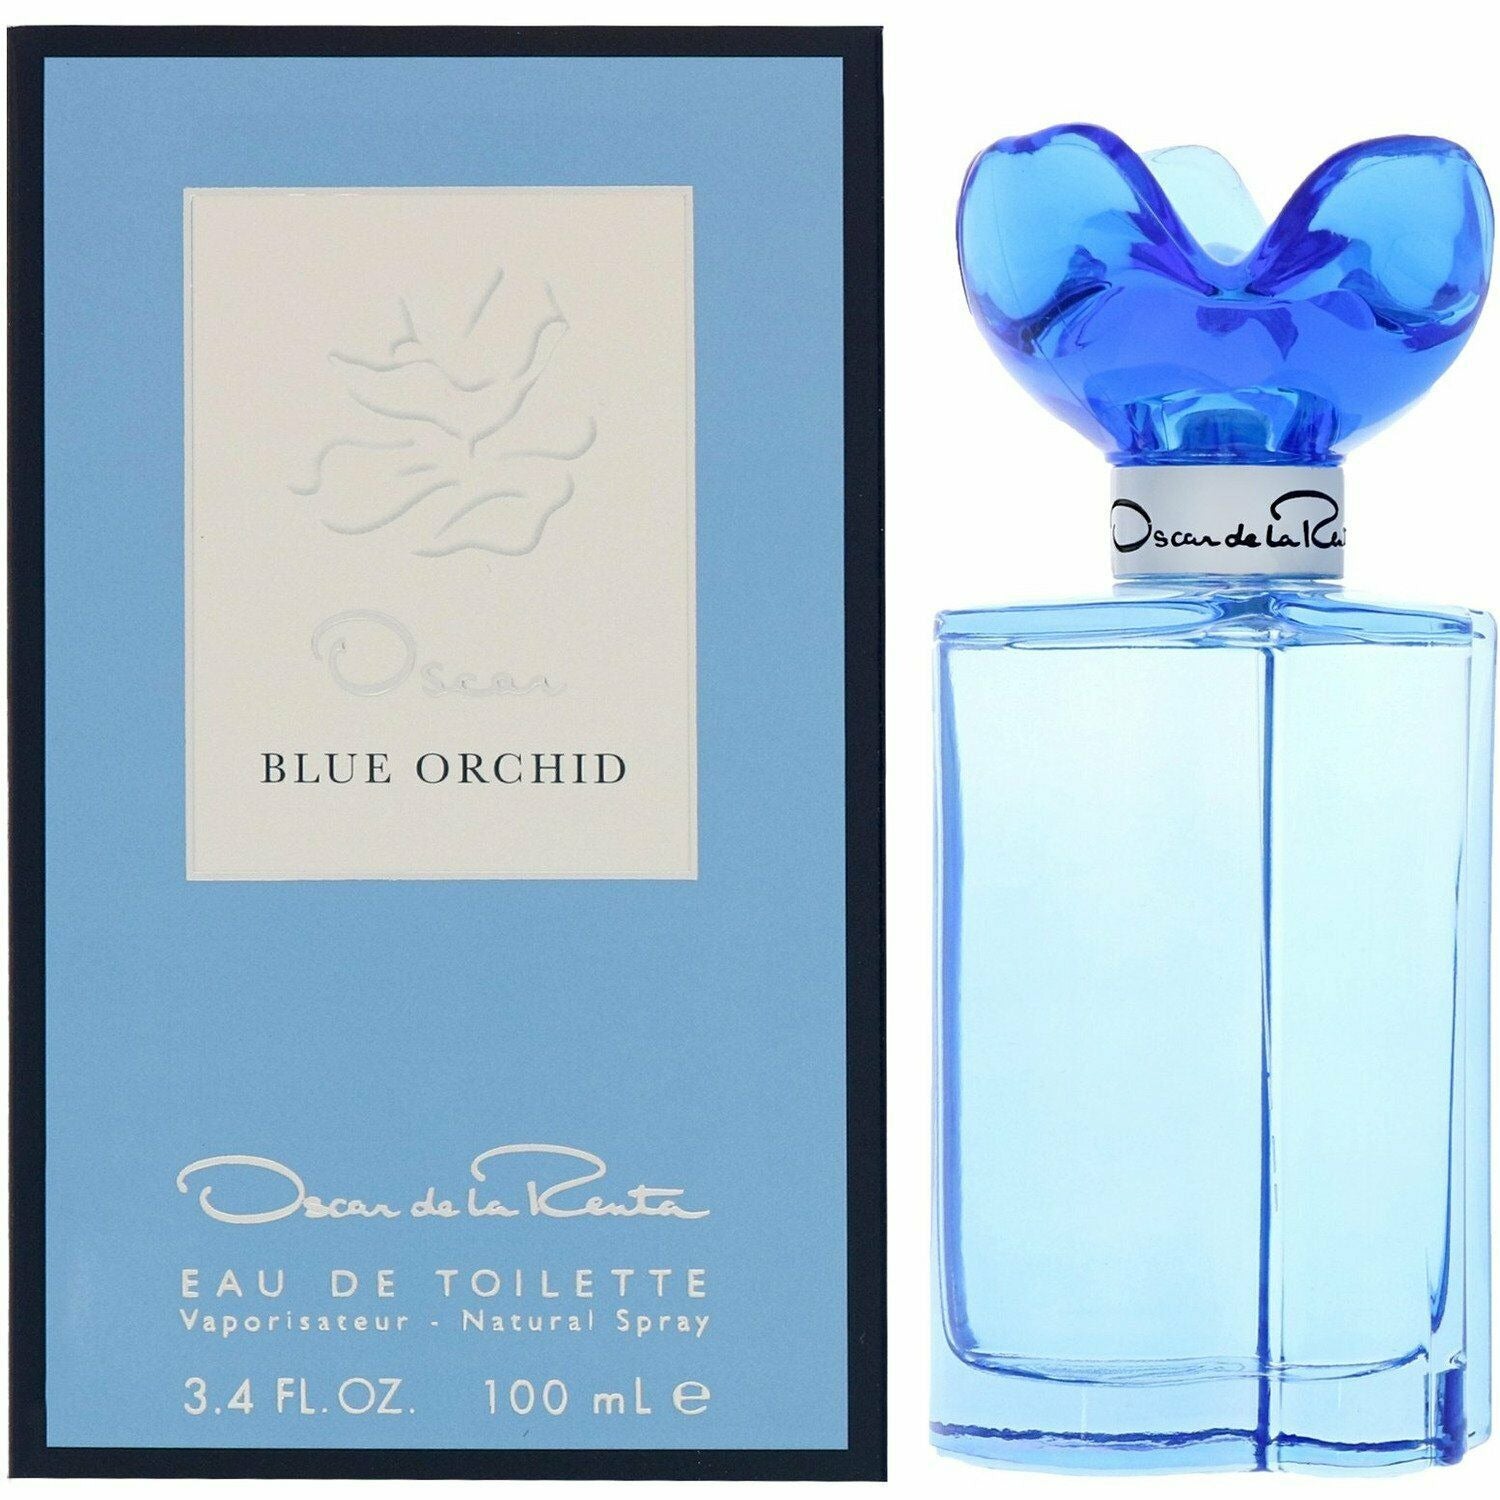    blue-orchid-oscar-de-la-renta